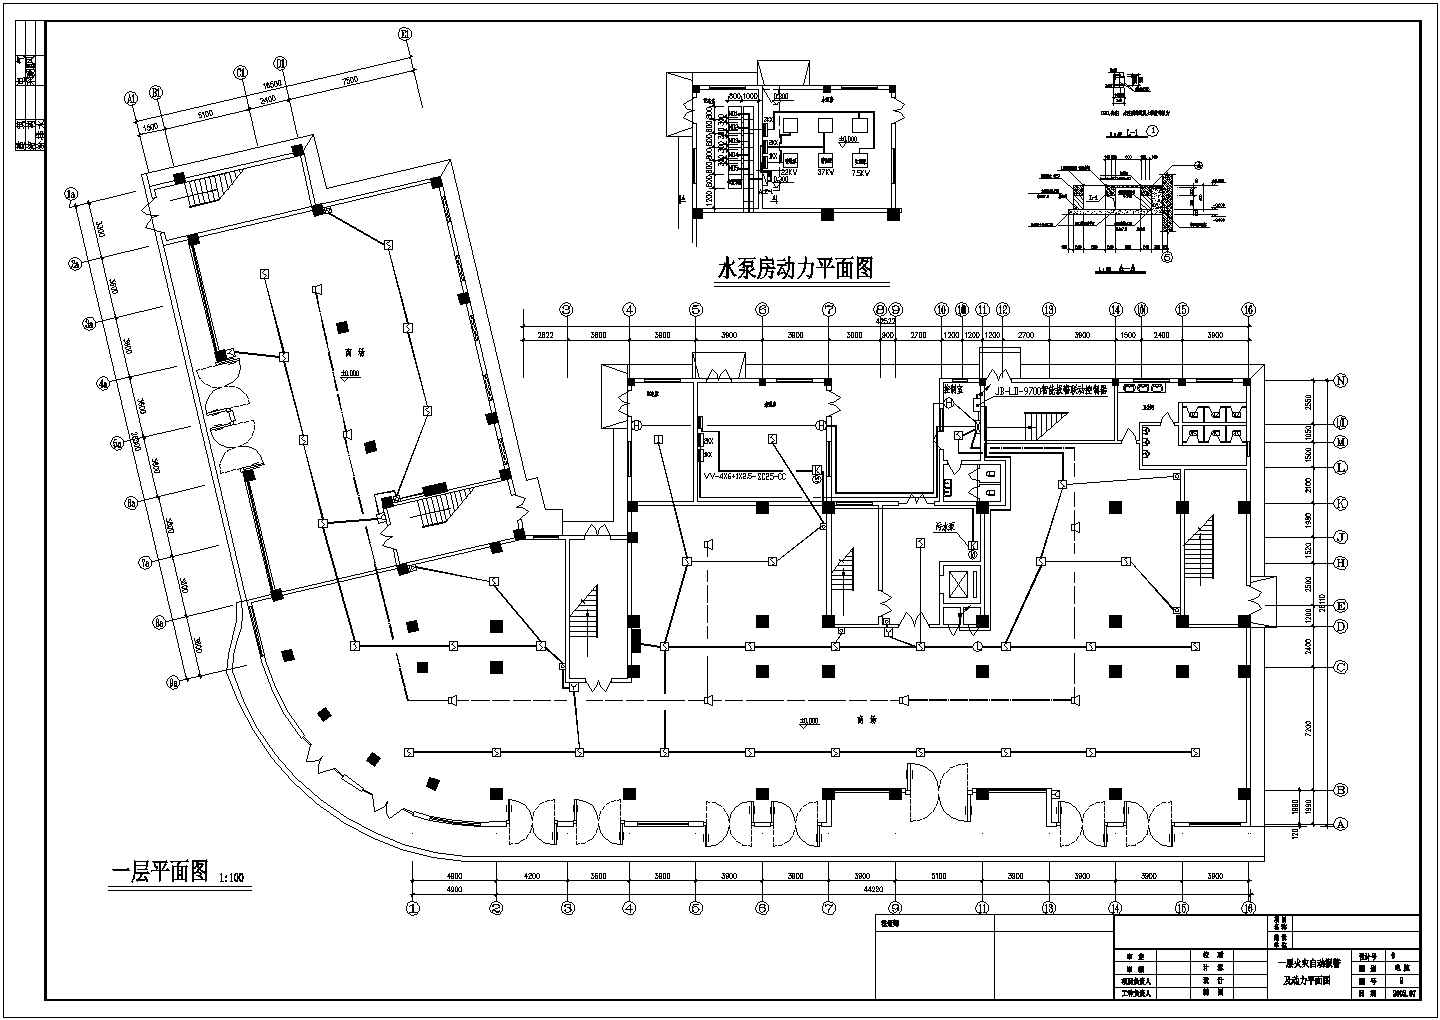 天津工程职业技术学院11层综合楼电气设方案图